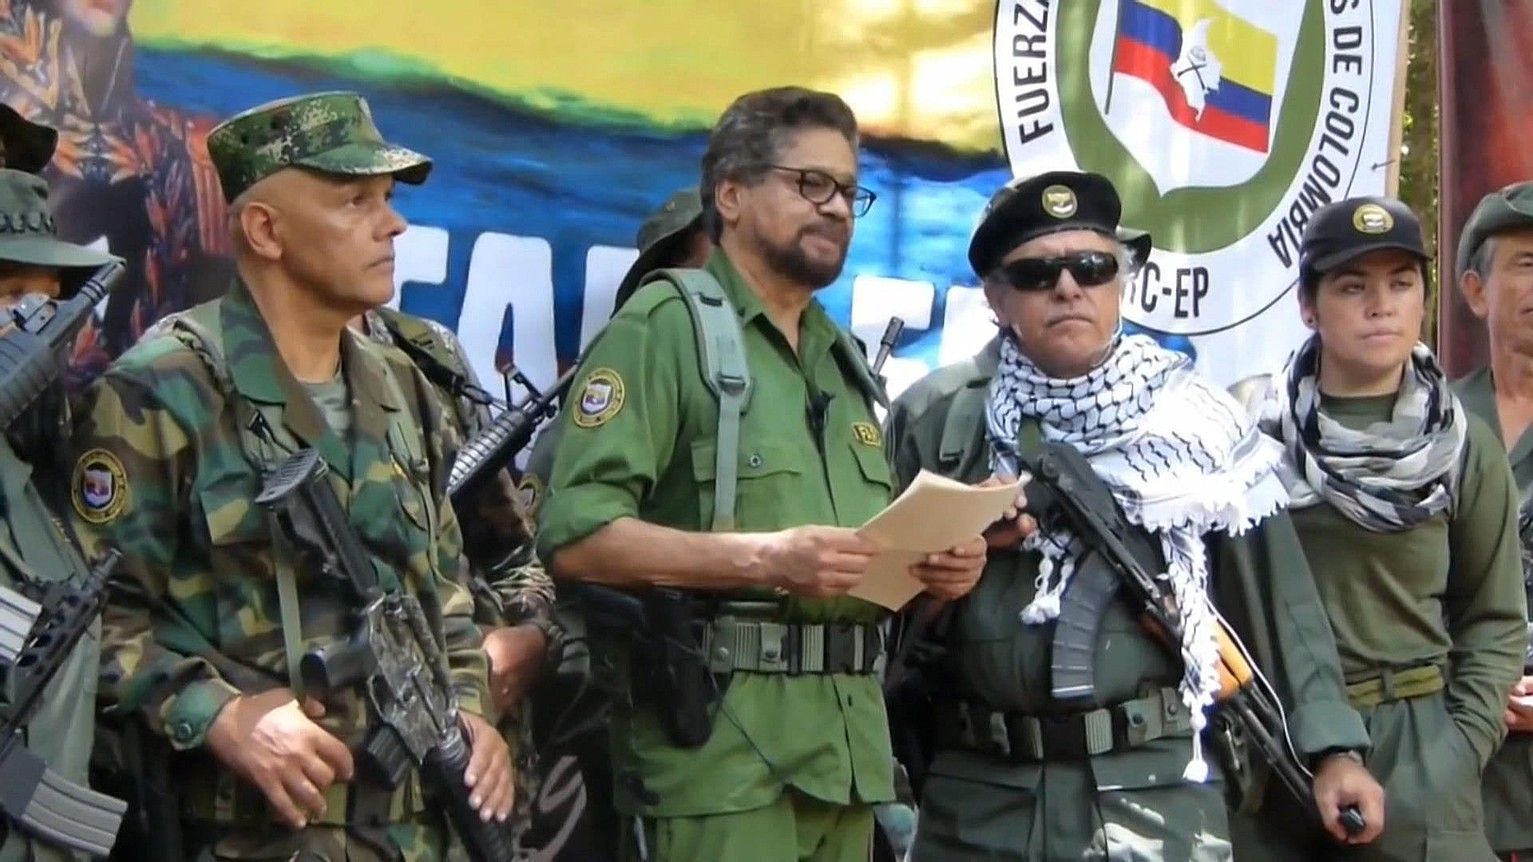 Ivan Marquez eta Jesus Santrich FARC-EPko buru ohitzat jo izan dira, eta haiek atzemateko agindu du JEPek, besteak beste. EFE.